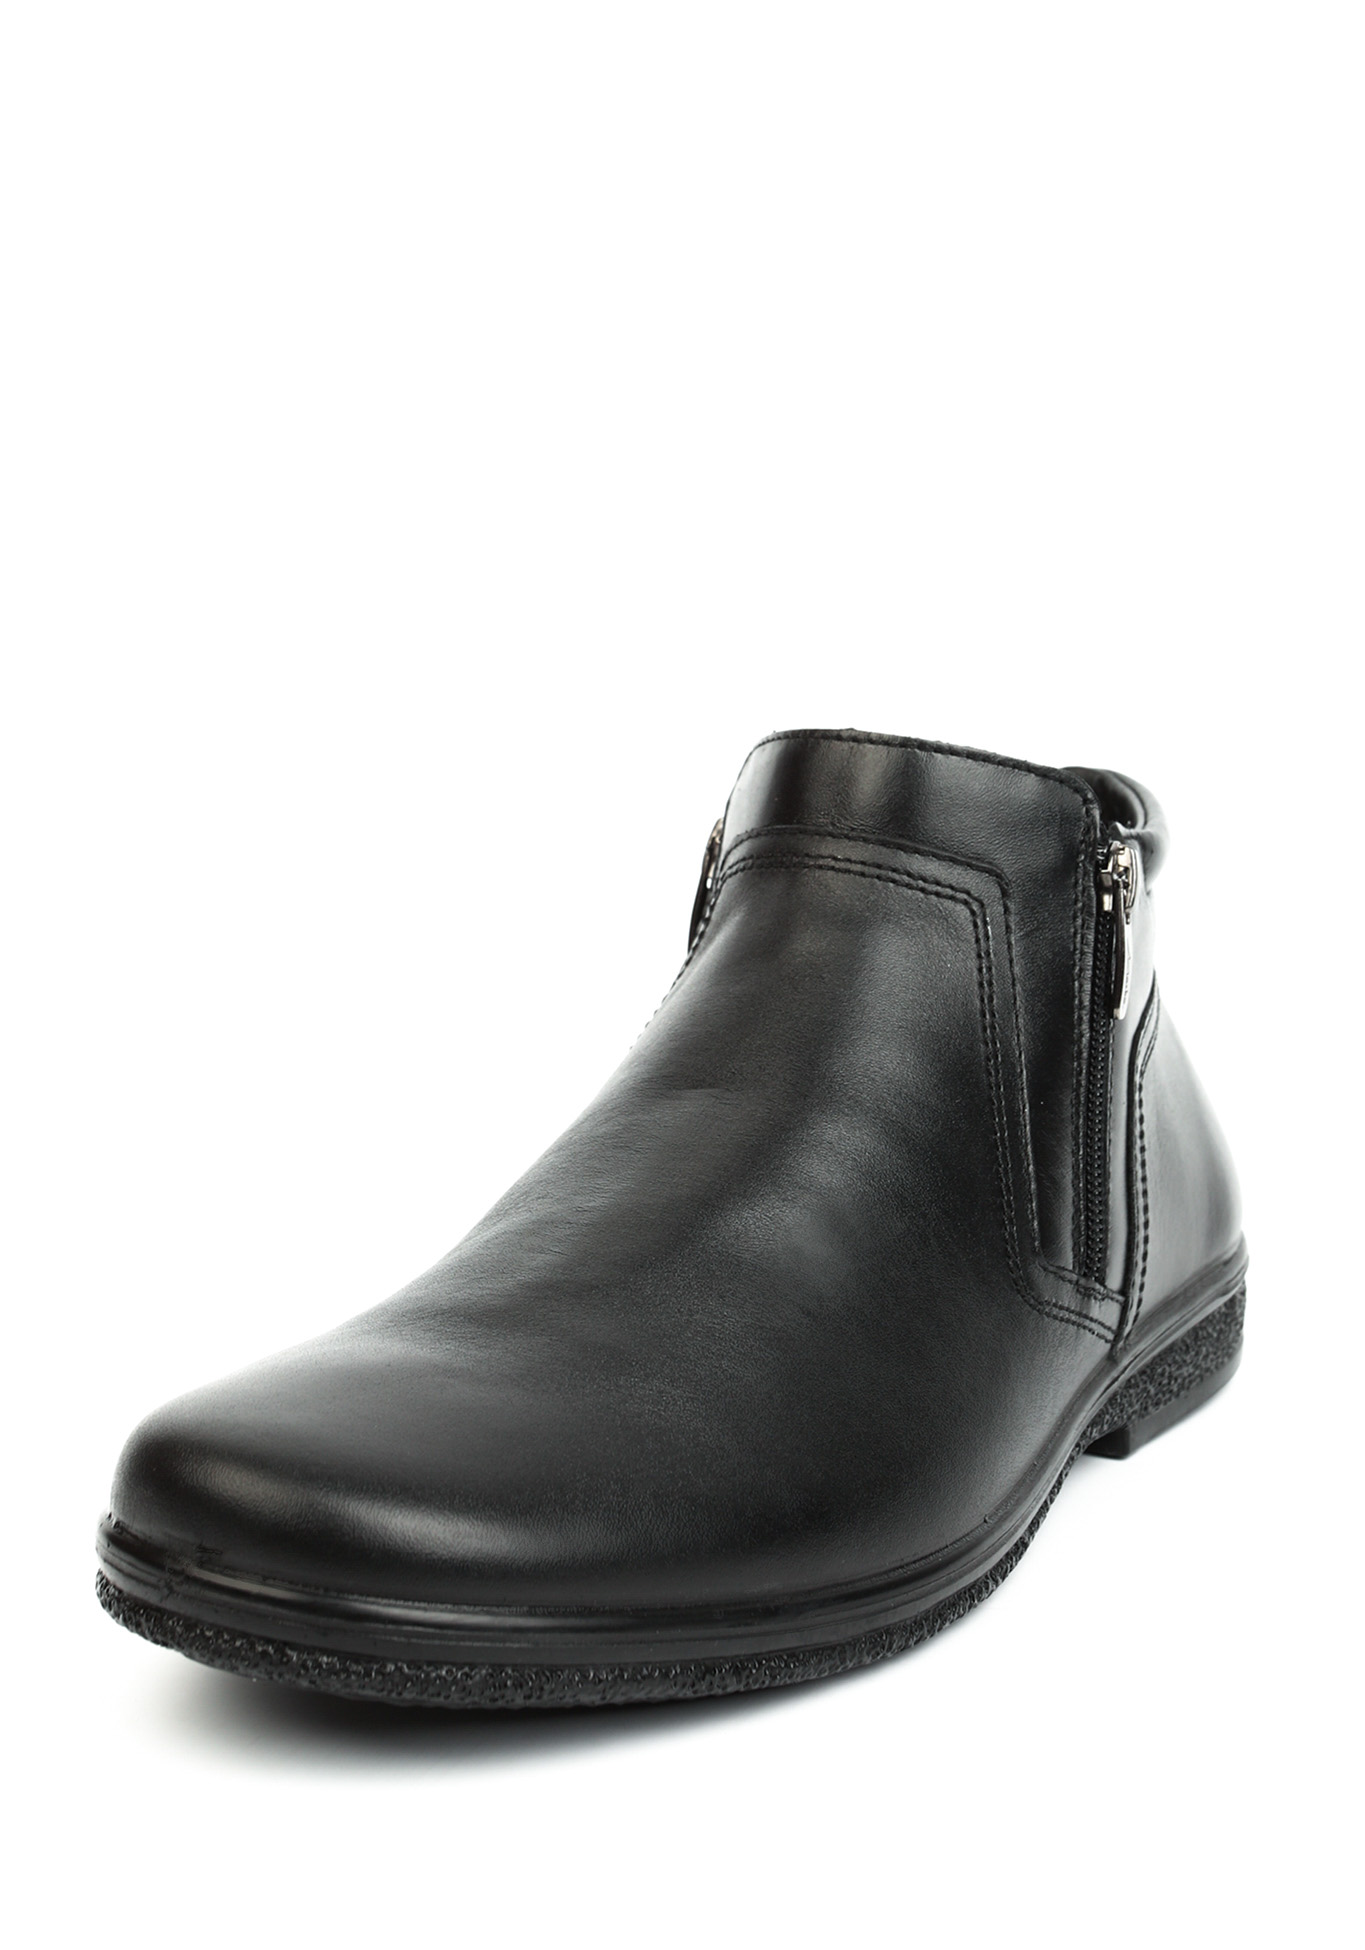 Ботинки мужские "Стеффан" Marko, размер 40, цвет черный - фото 1